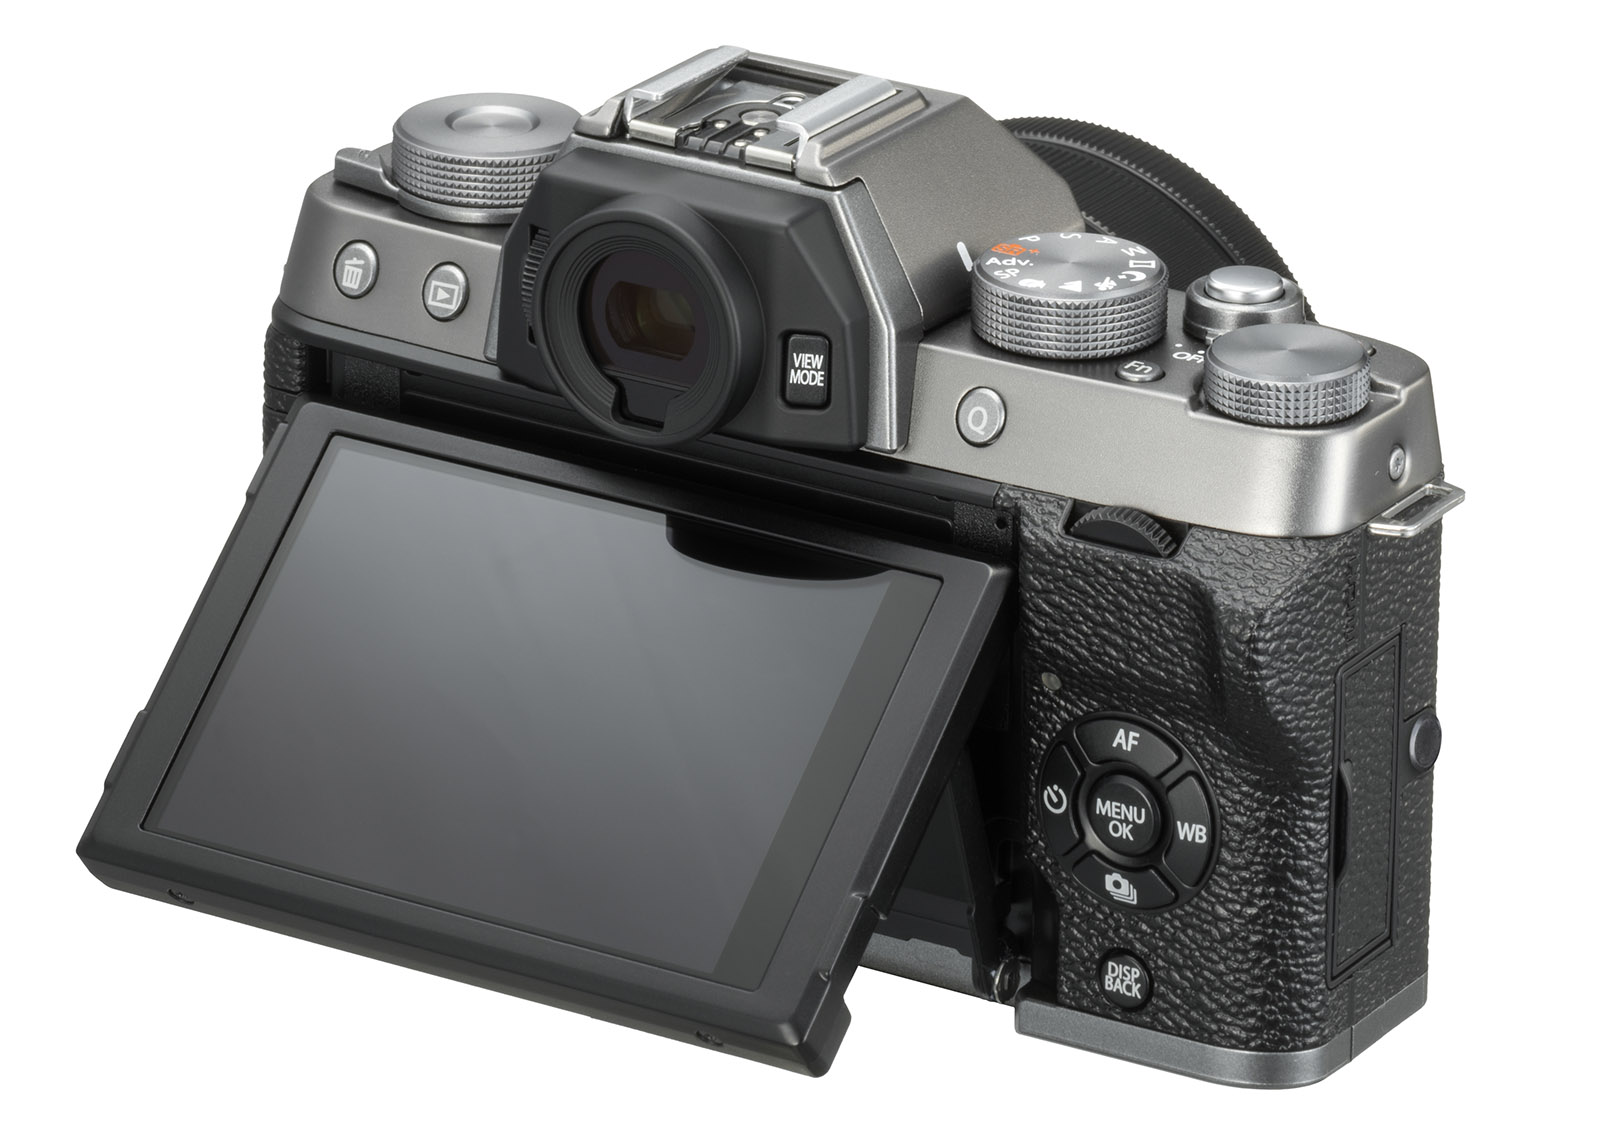 Fujifilm'den retro görünümlü yeni aynasız fotoğraf makinesi: X-T100